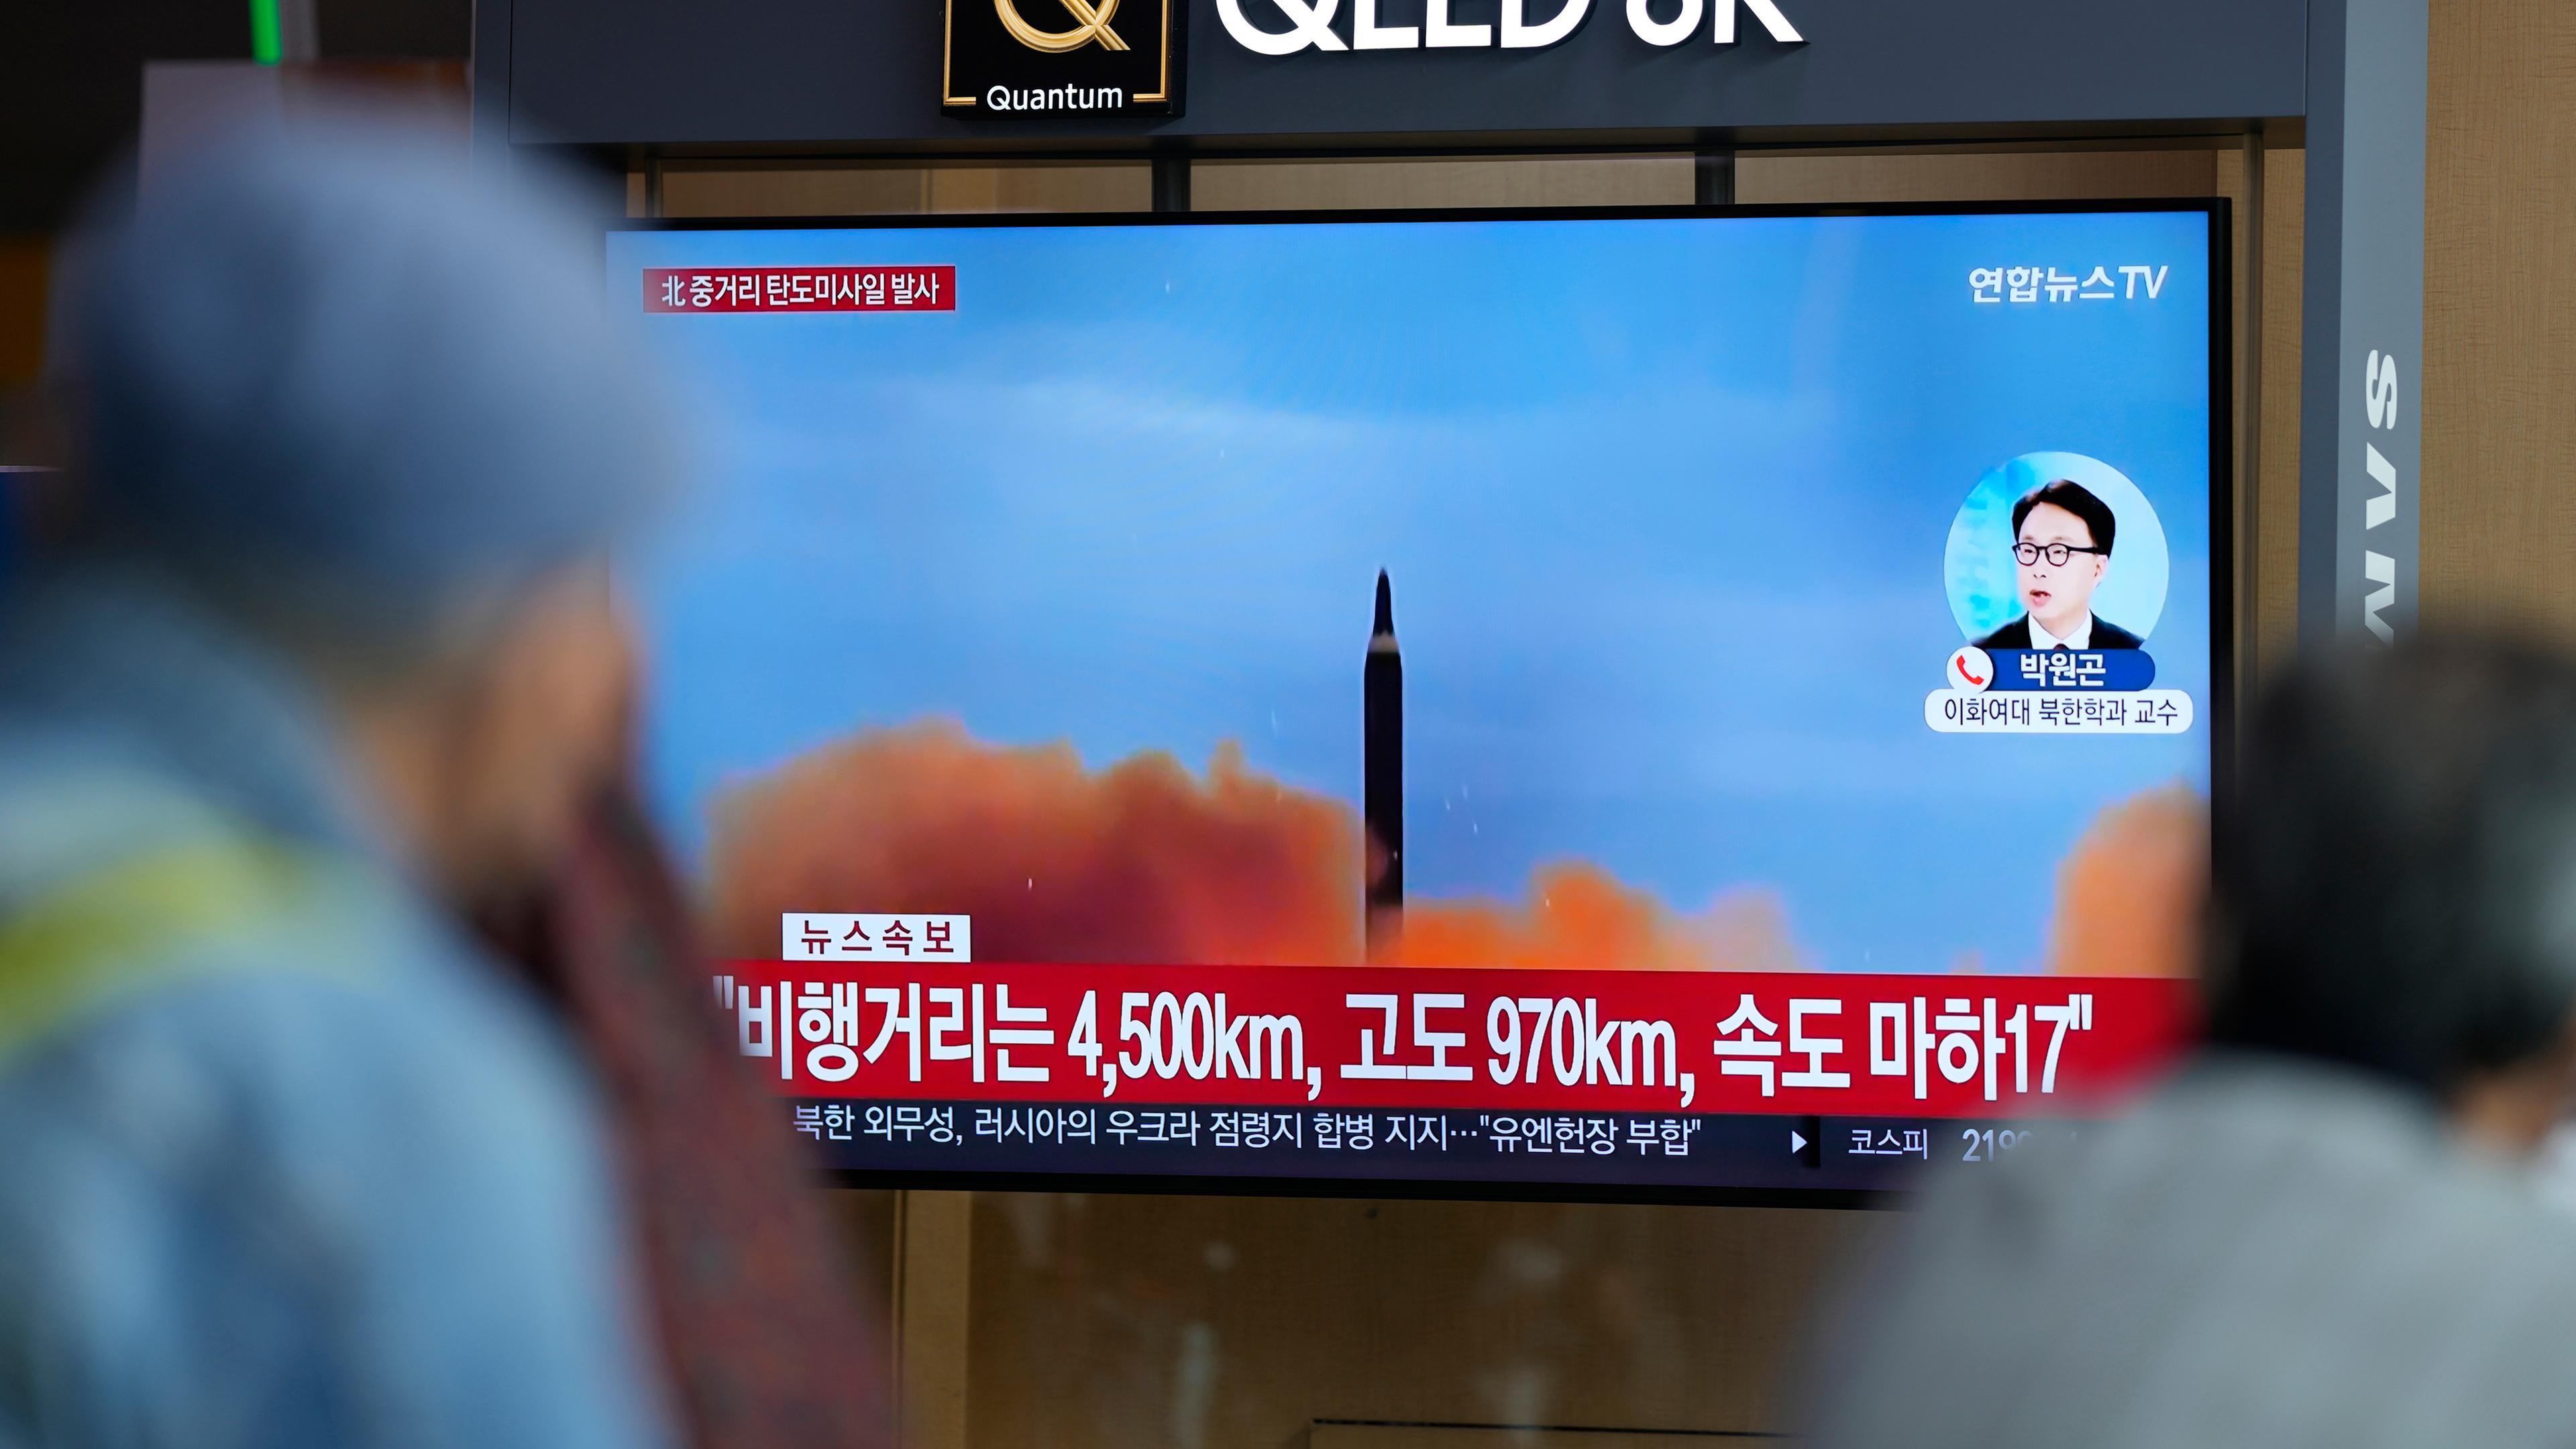 Menschen im südkoreanischen Seoul verfolgen den jüngsten Raketentest des Nachbarn Nordkorea an Bildschirmen.